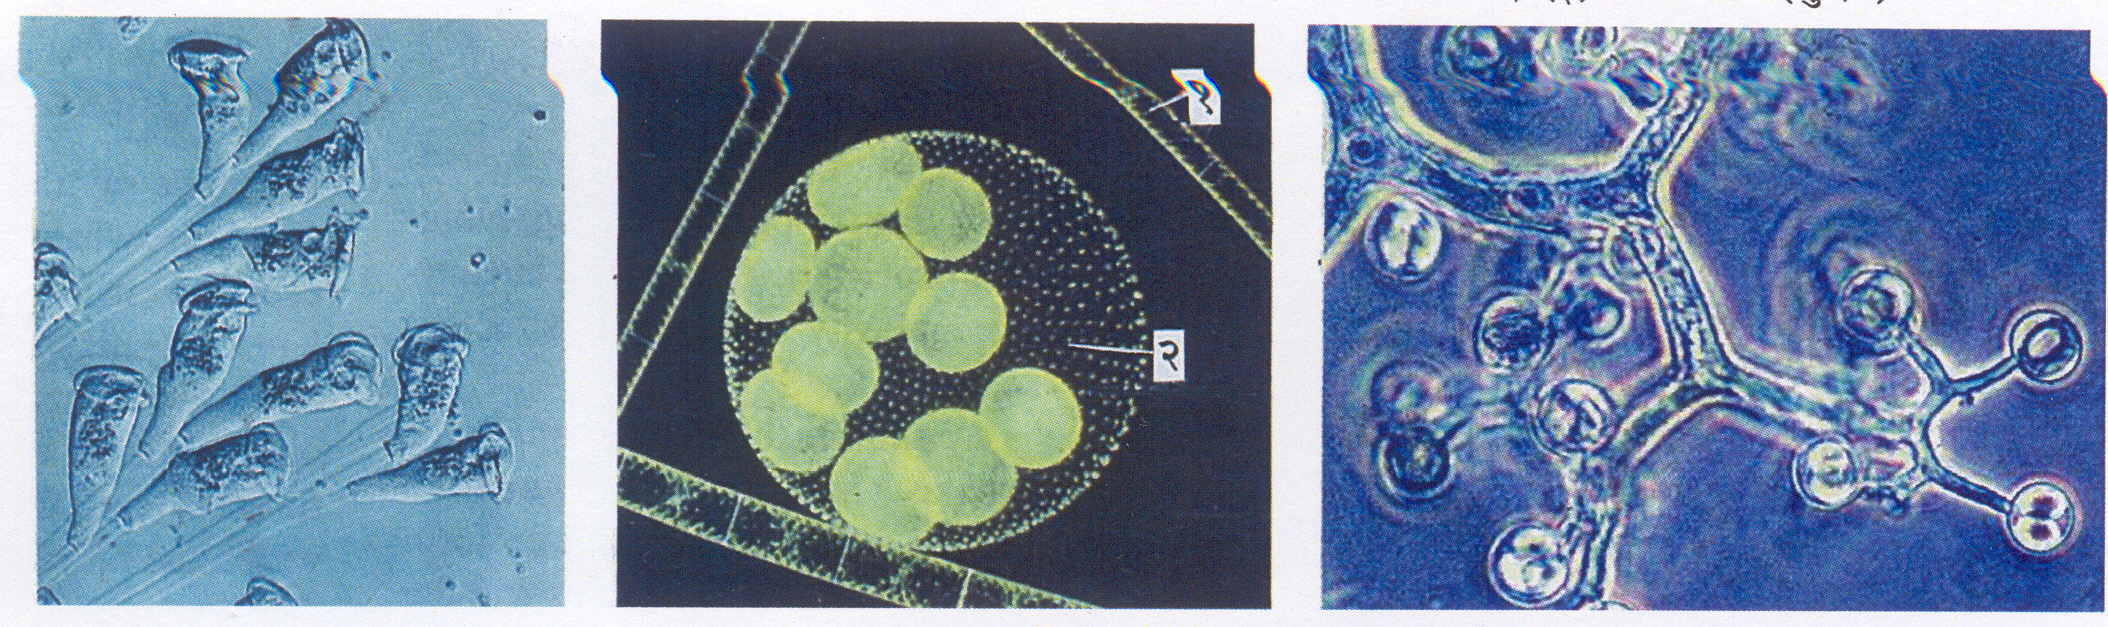 यूकॅरिऑटिक सूक्ष्मजीव : (अ) व्हॉर्टिसेला (आदिजीव), (आ) शैवले : १. स्पायरोगायरा, २. व्होलवॉक्स, इ. थॅम्निडियम (बुरशी).